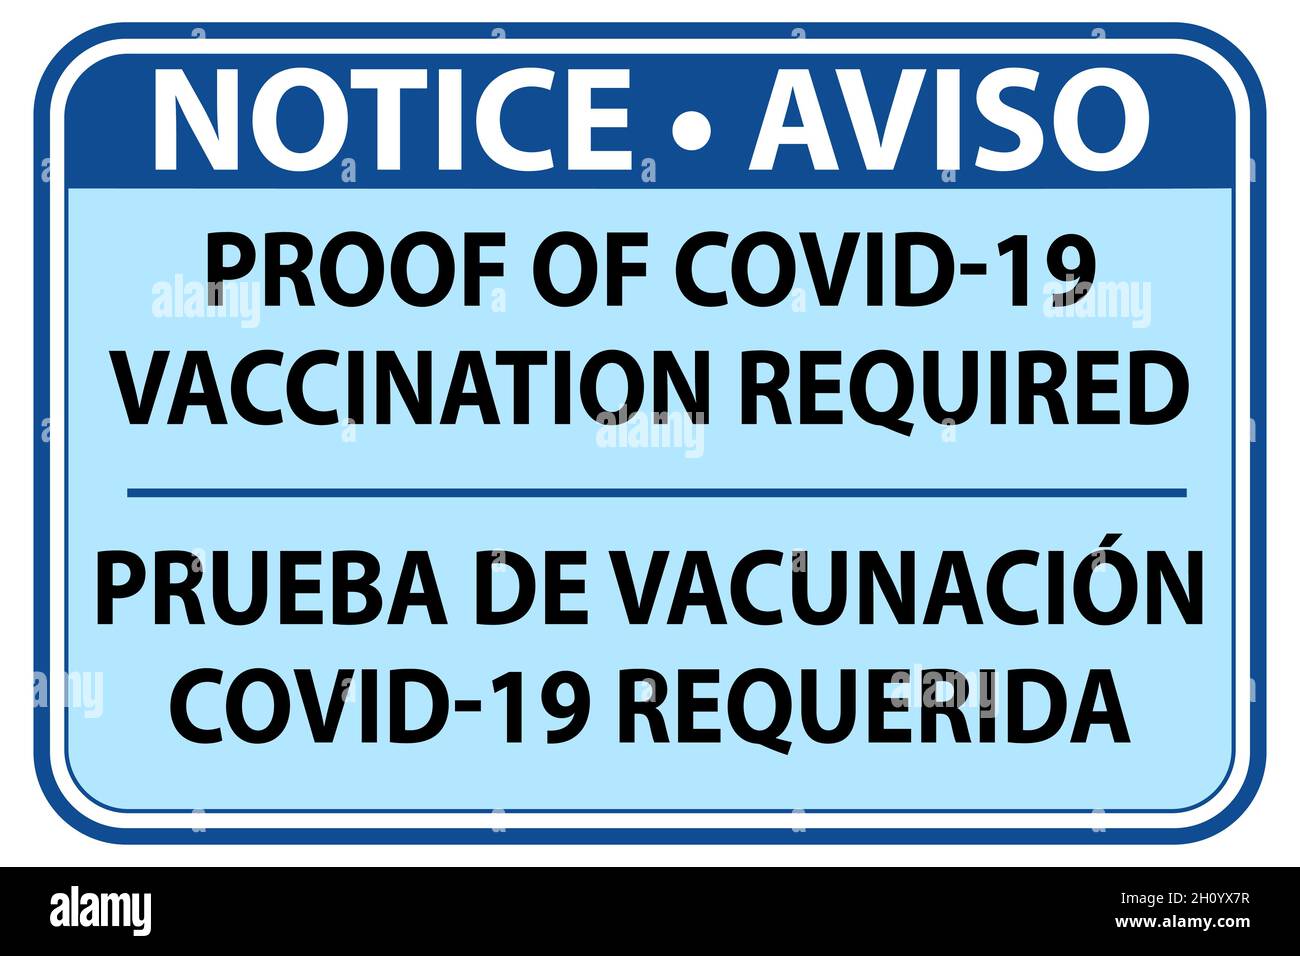 Hinweis Nachweis der Impfung erforderlich Zeichen in Englisch und Spanisch - Vektor-Illustration Stock Vektor